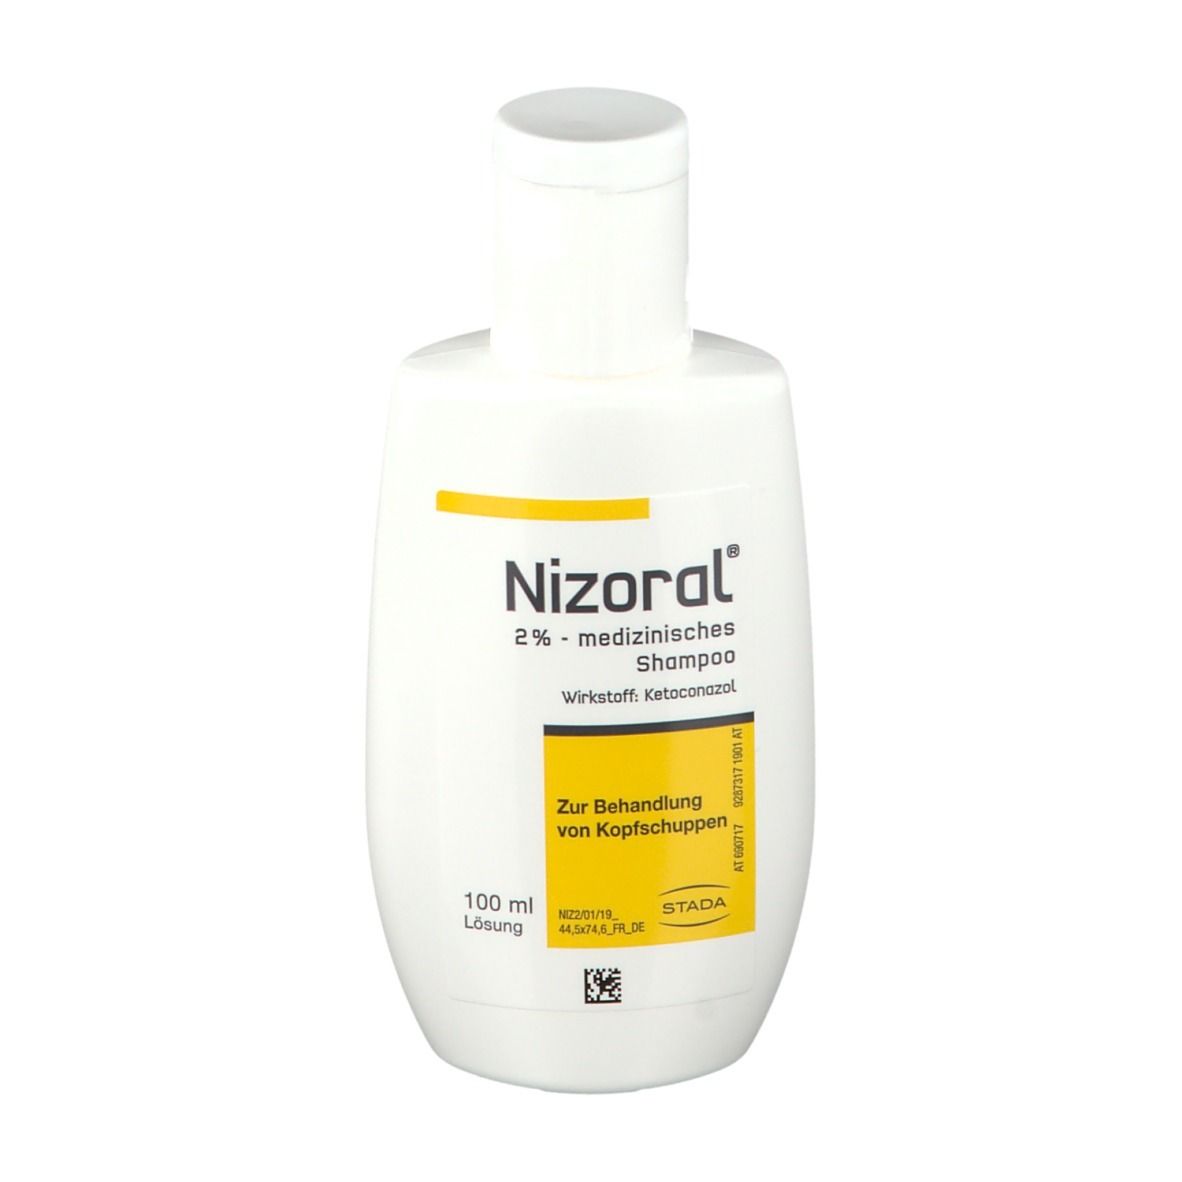 Nizoral shampoo - Unsere Auswahl unter allen analysierten Nizoral shampoo!